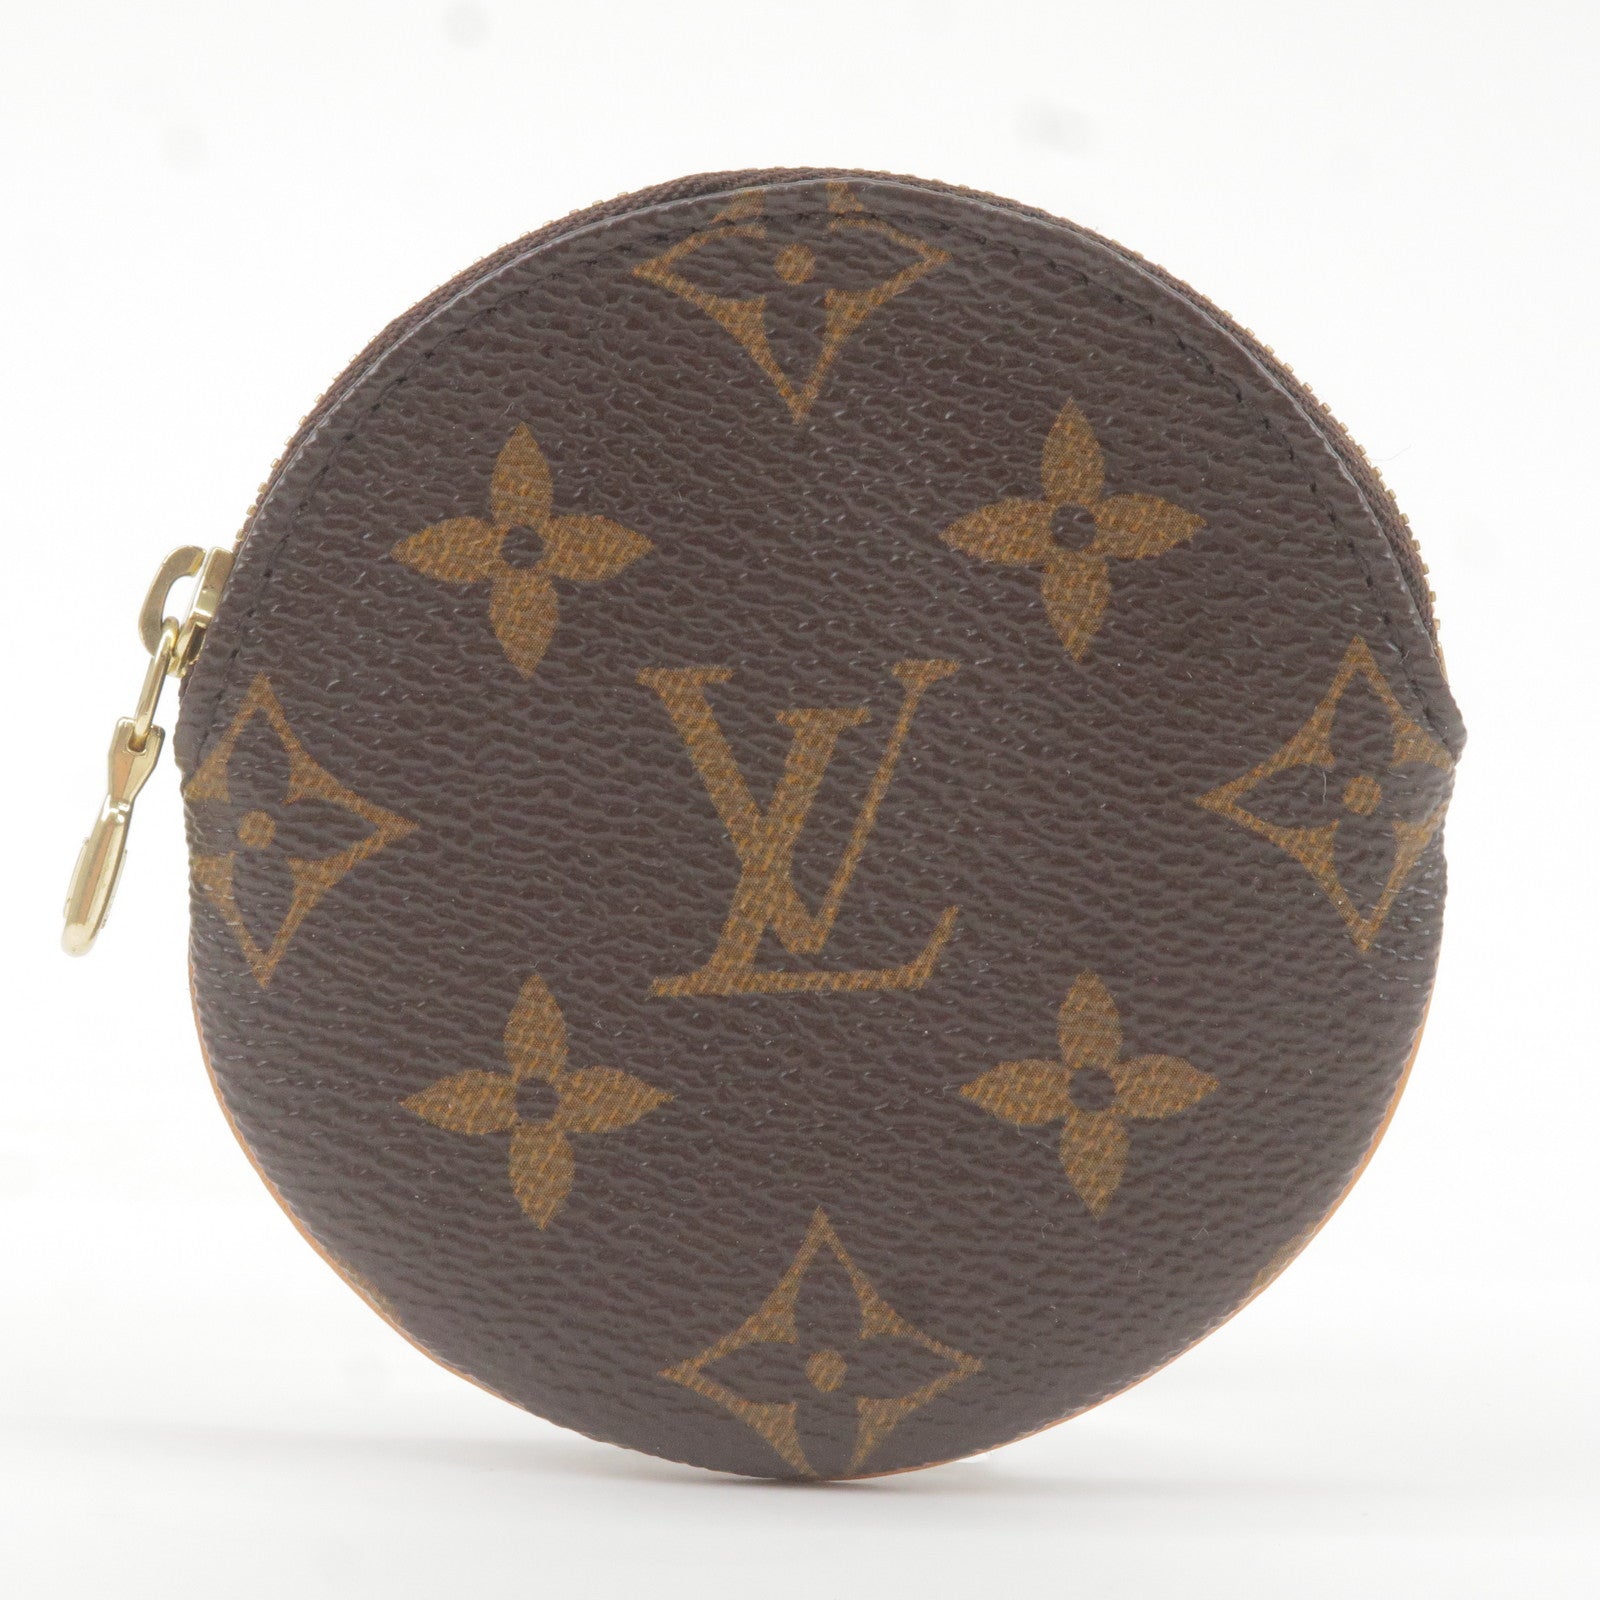 Louis - Graffiti - Accessoires - Monogram - Vuitton - ep_vintage